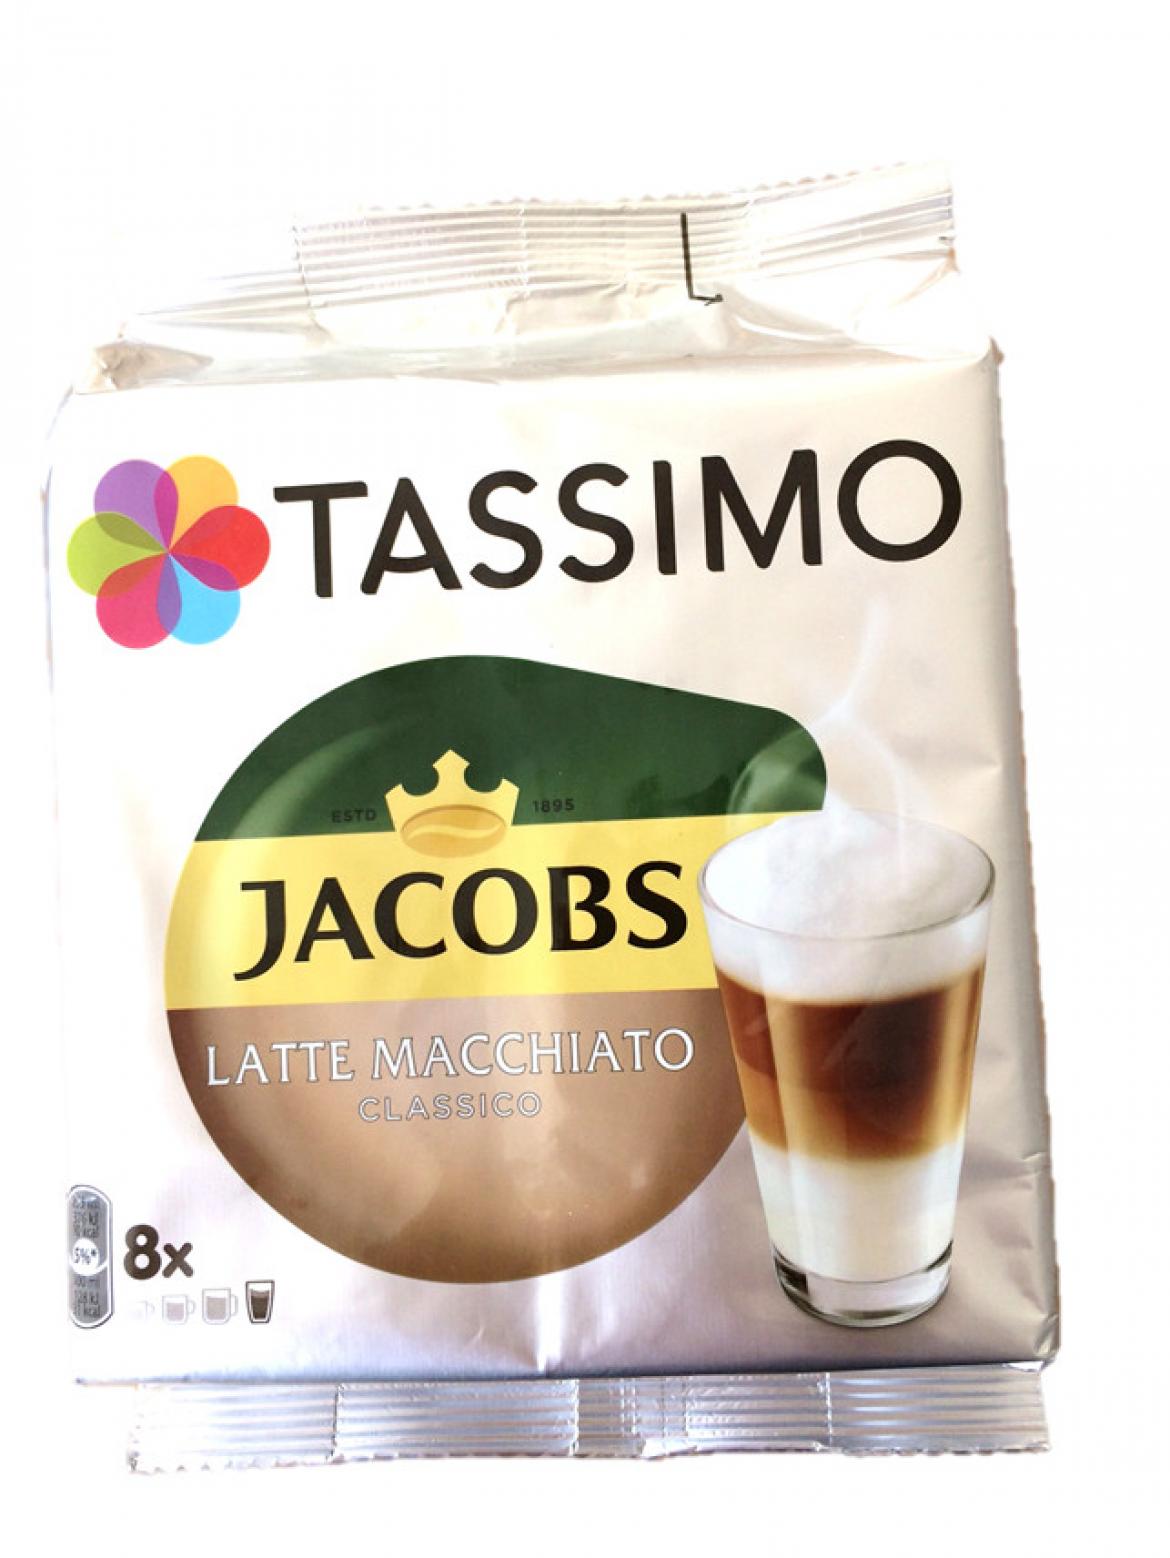 Eine Packung Tassimo "Latte macchiato"